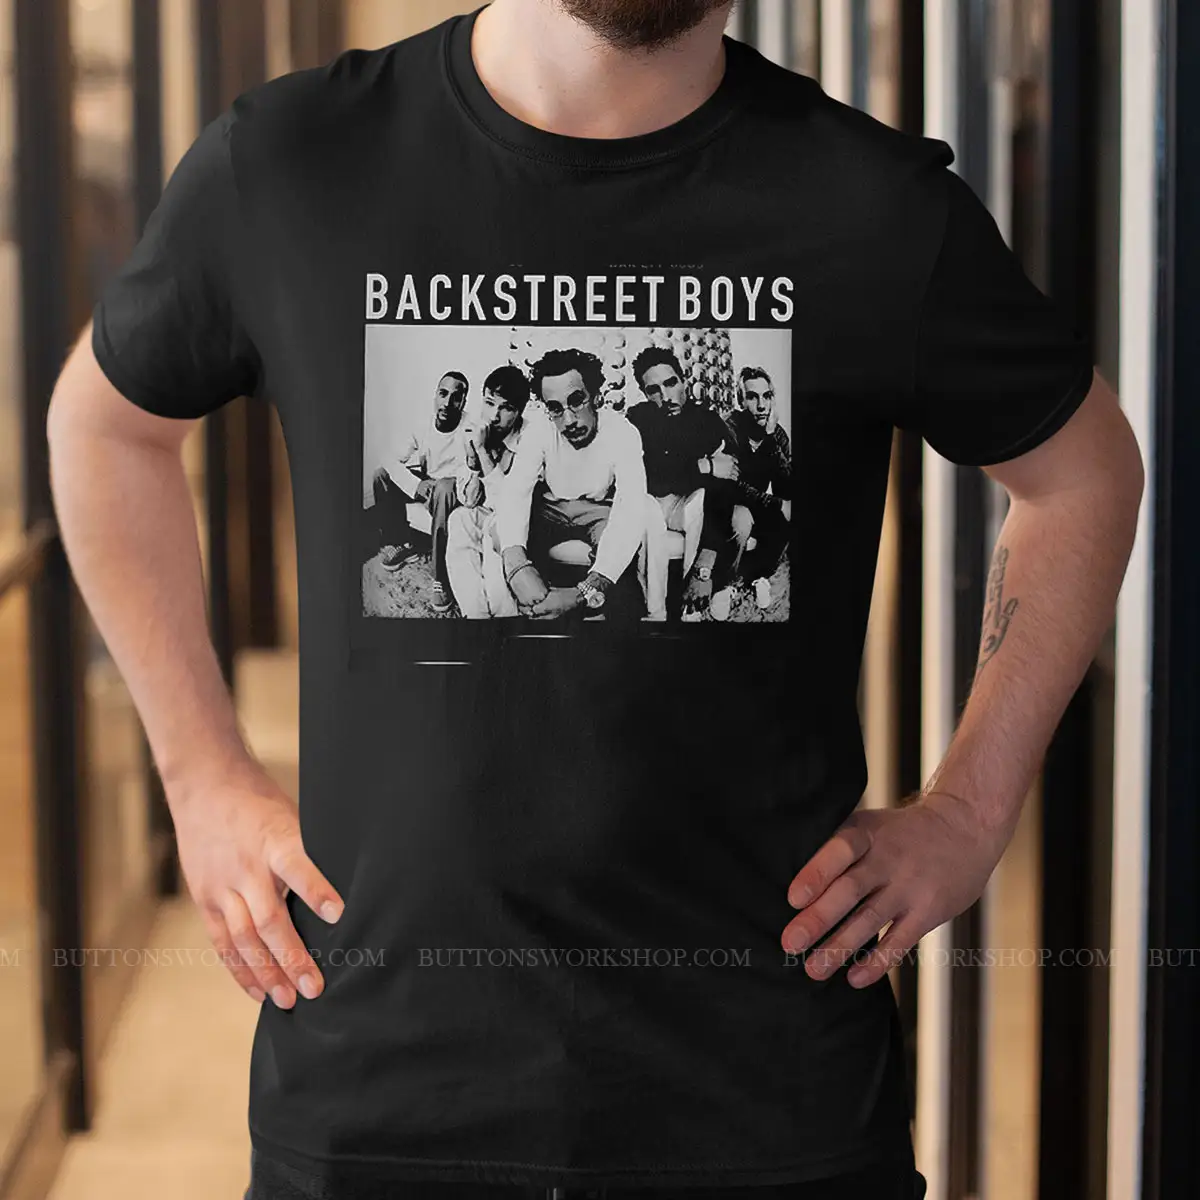 Backstreetboys Unisex Tshirt